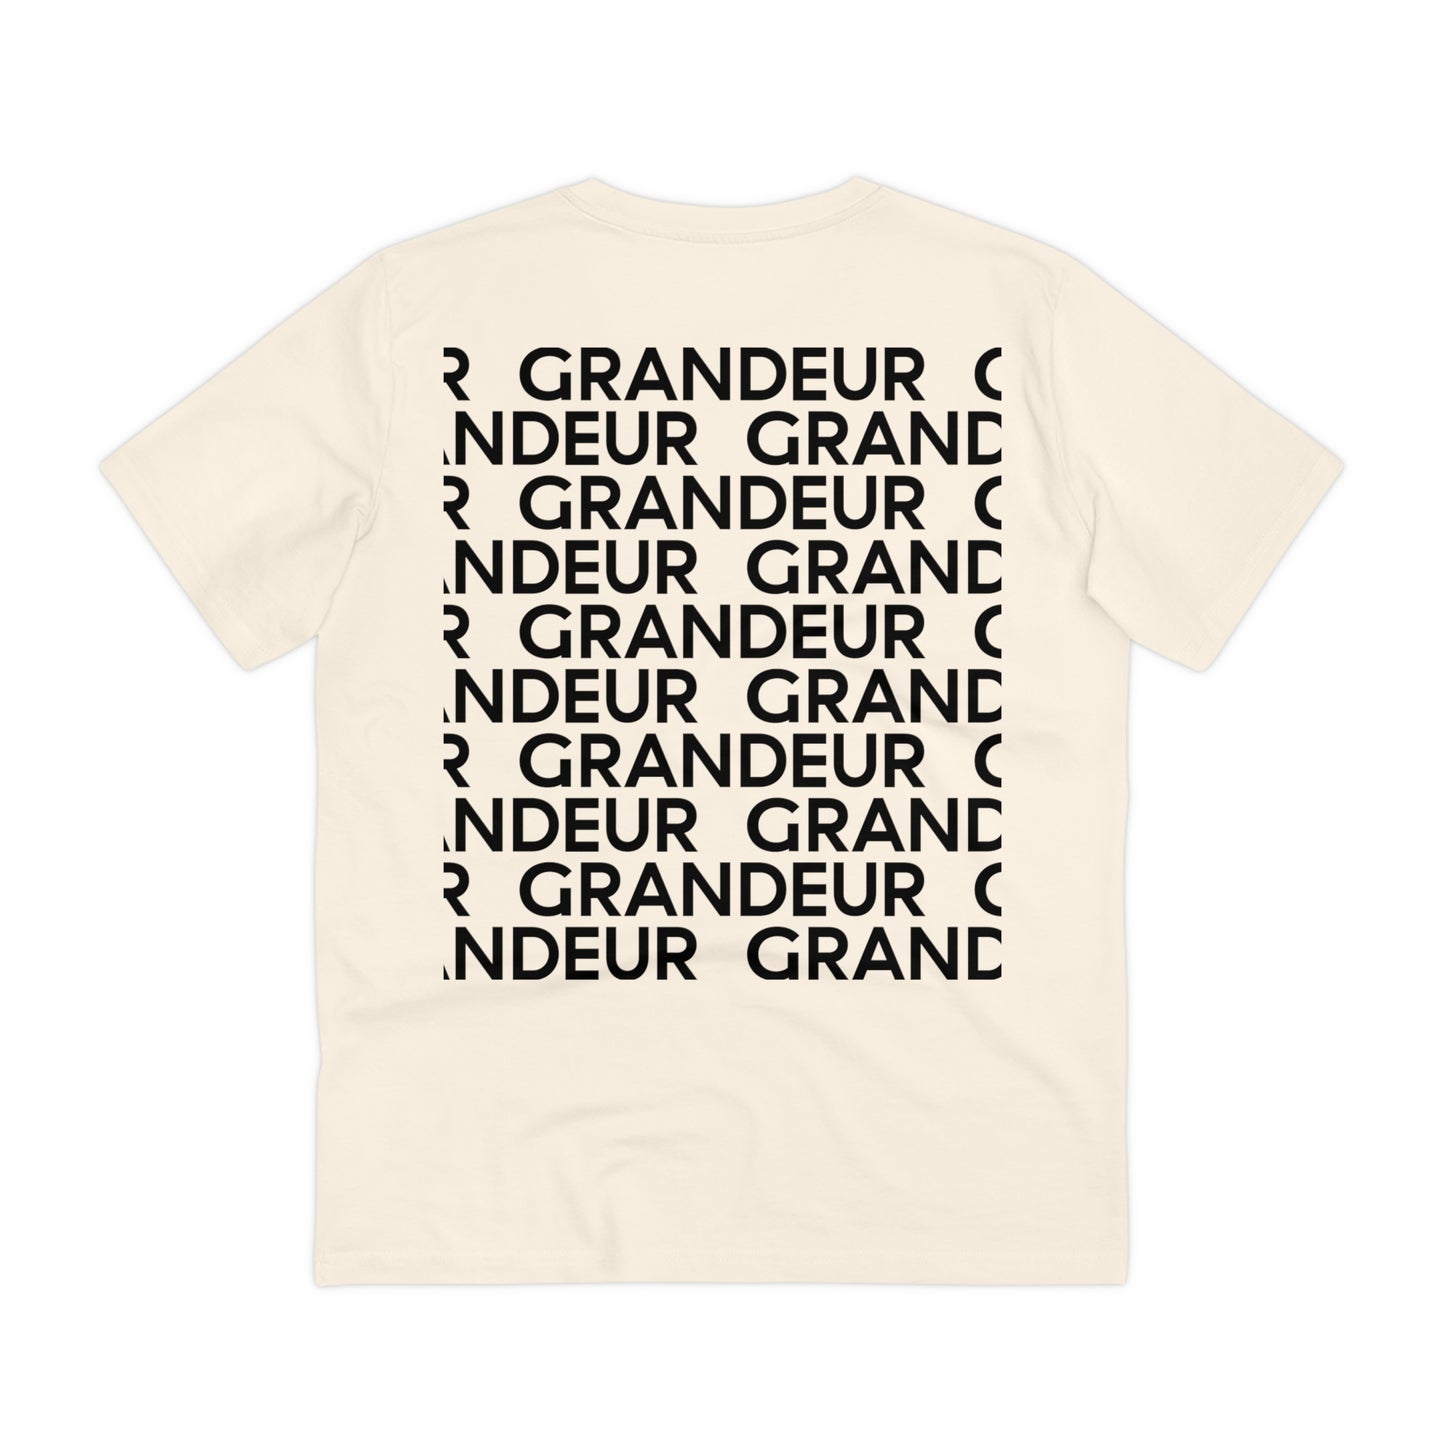 GRANDEUR® AUTHORITY Creator T-shirt - Unisex